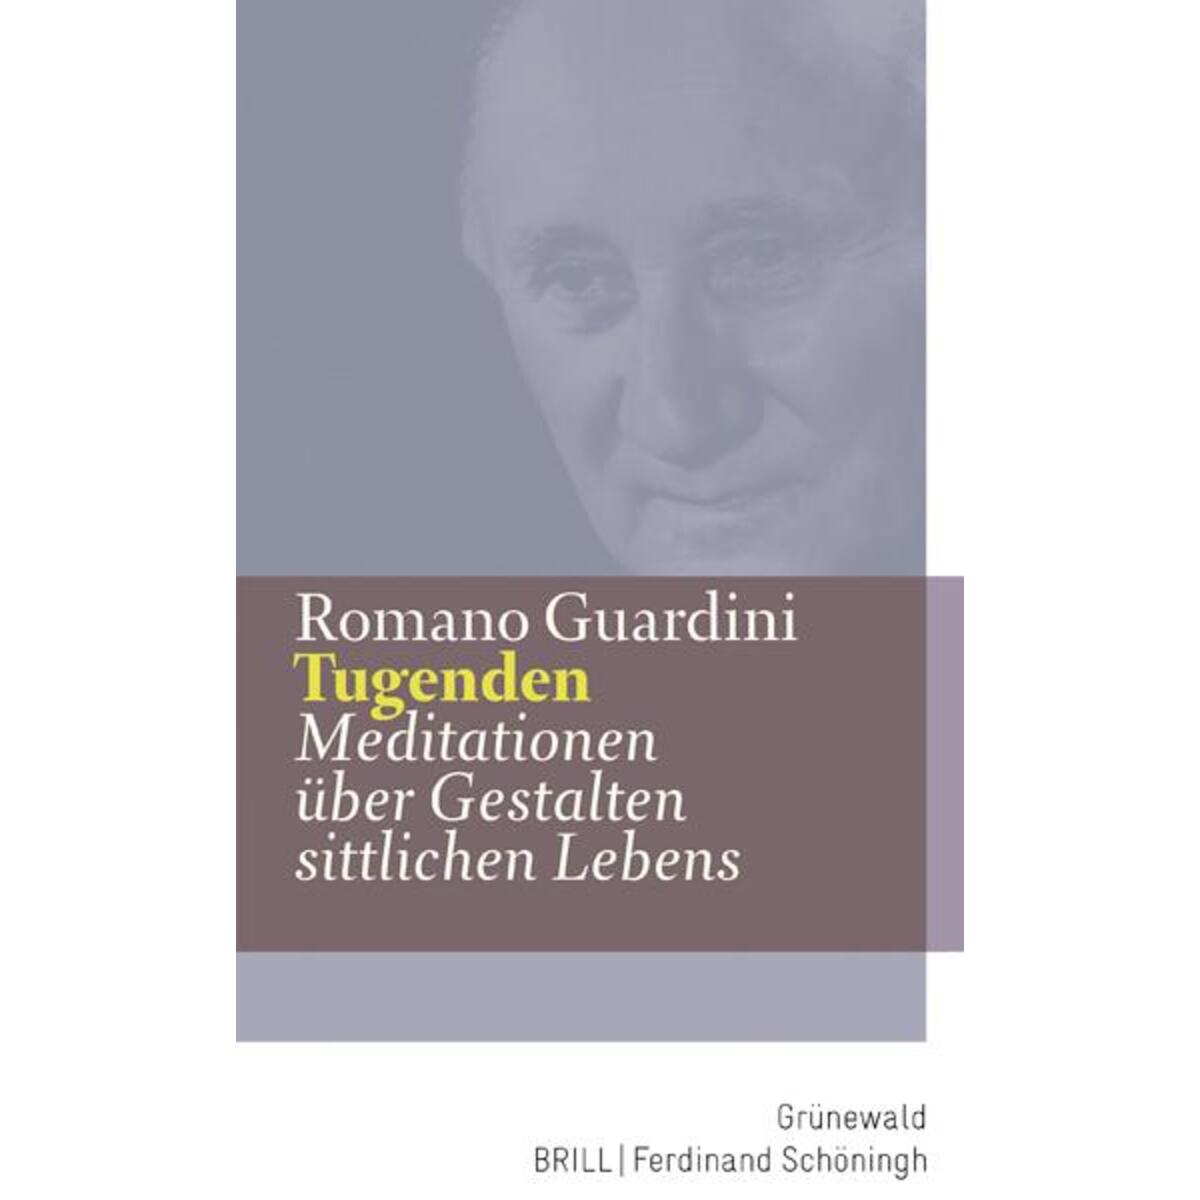 Tugenden von Matthias-Grünewald-Verlag